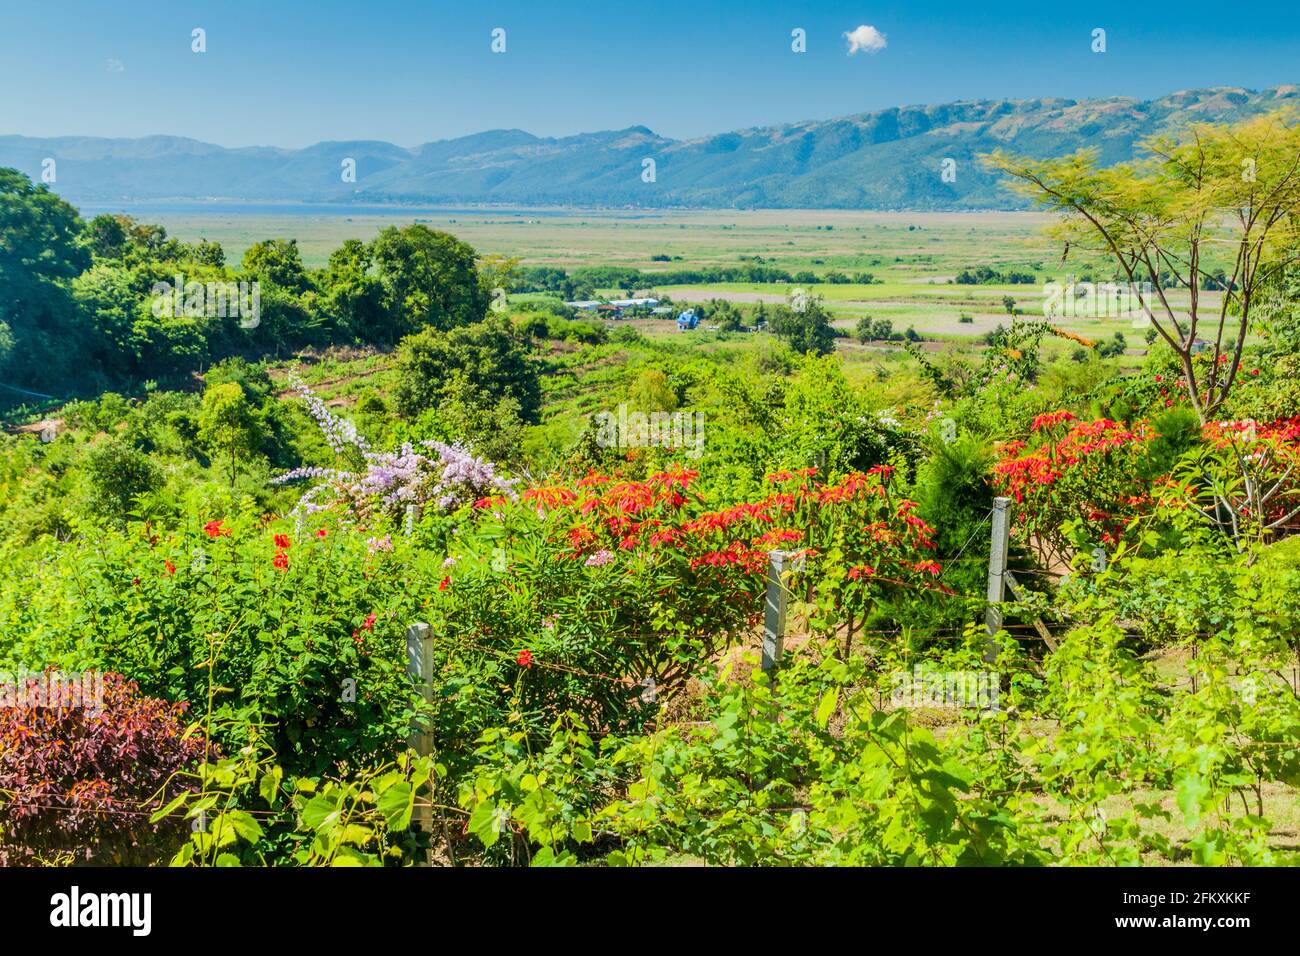 Garden of Red Mountain Estate Vineyards near Inle lake, Myanmar Stock Photo